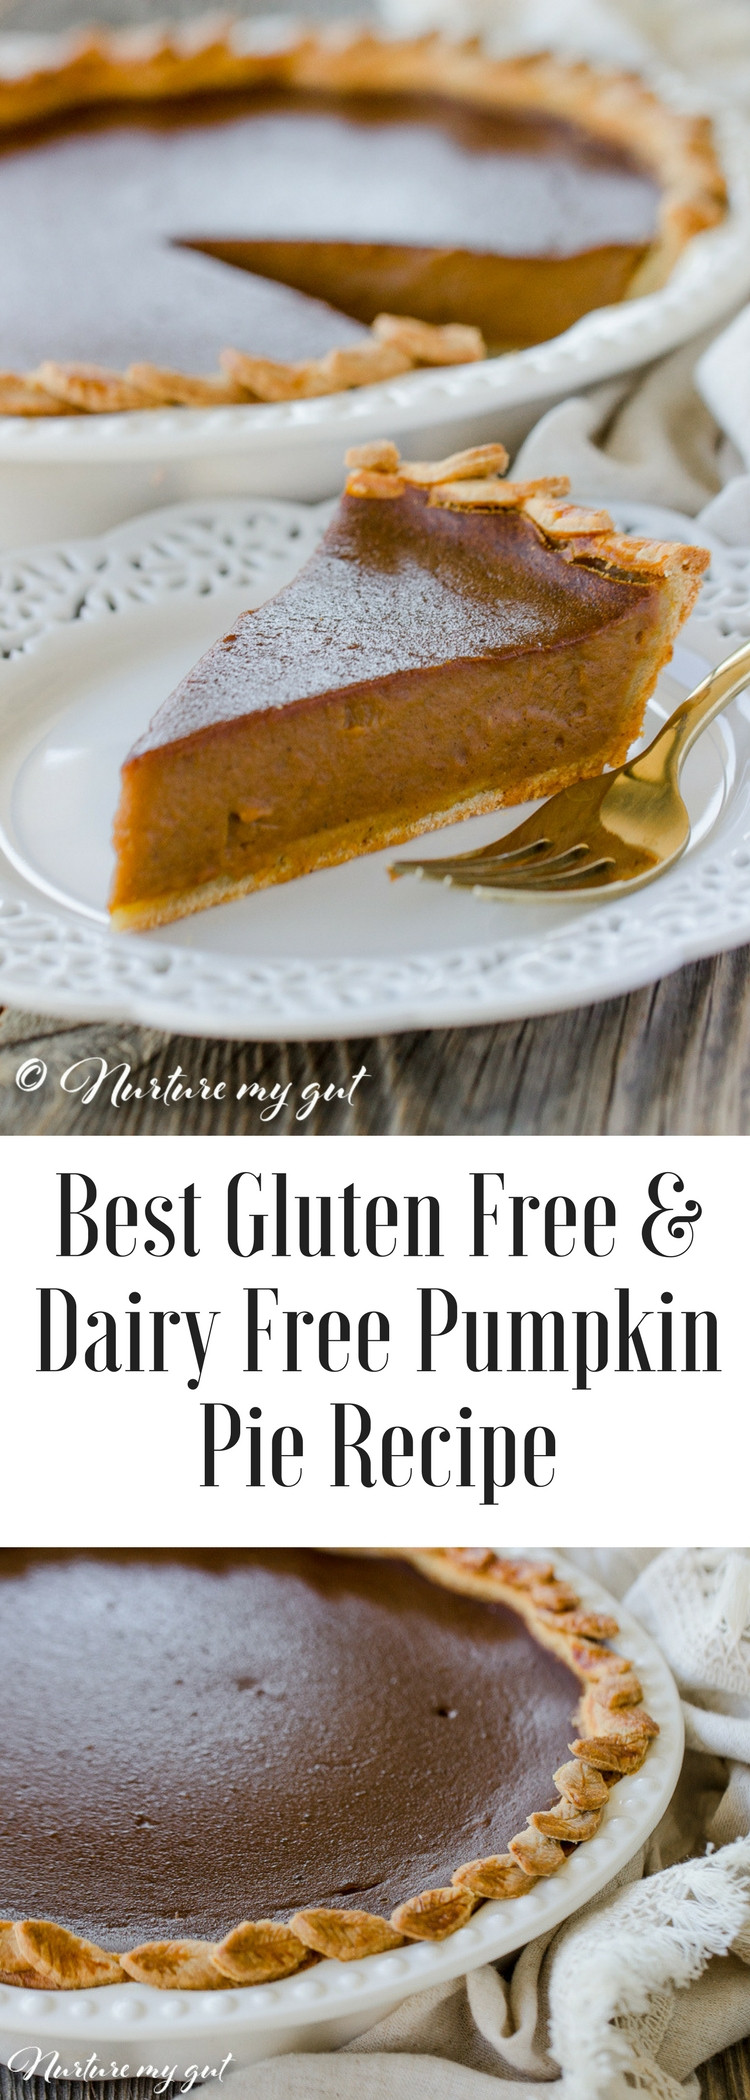 Pumpkin Pie Recipe Dairy Free
 Gluten Free Dairy Free Pumpkin Pie Recipe Best Pie Recipe 